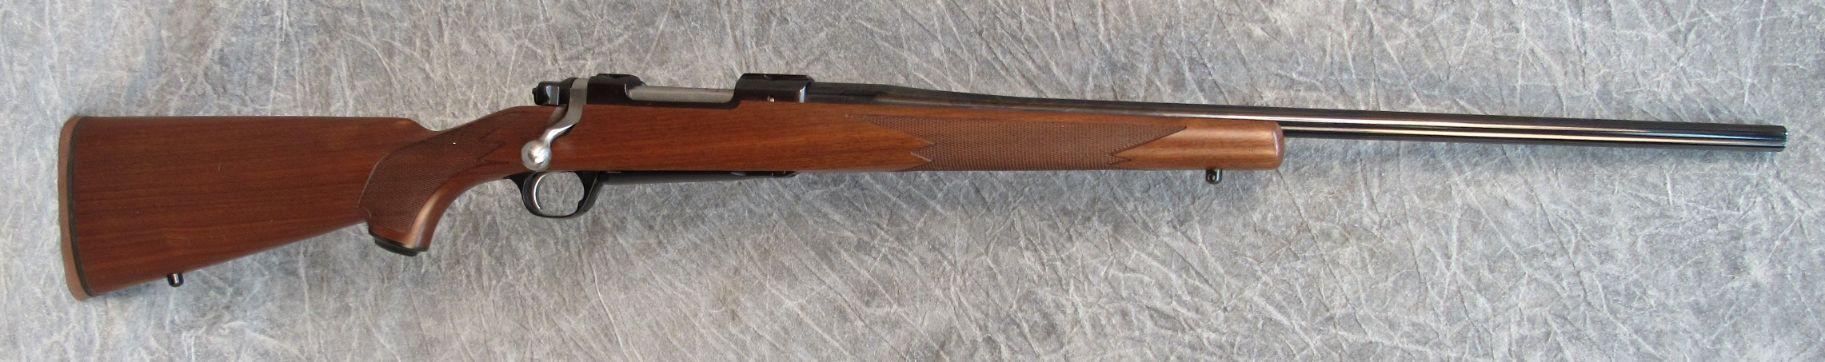 Ruger Model 77 Mark II Bolt Action Rifle